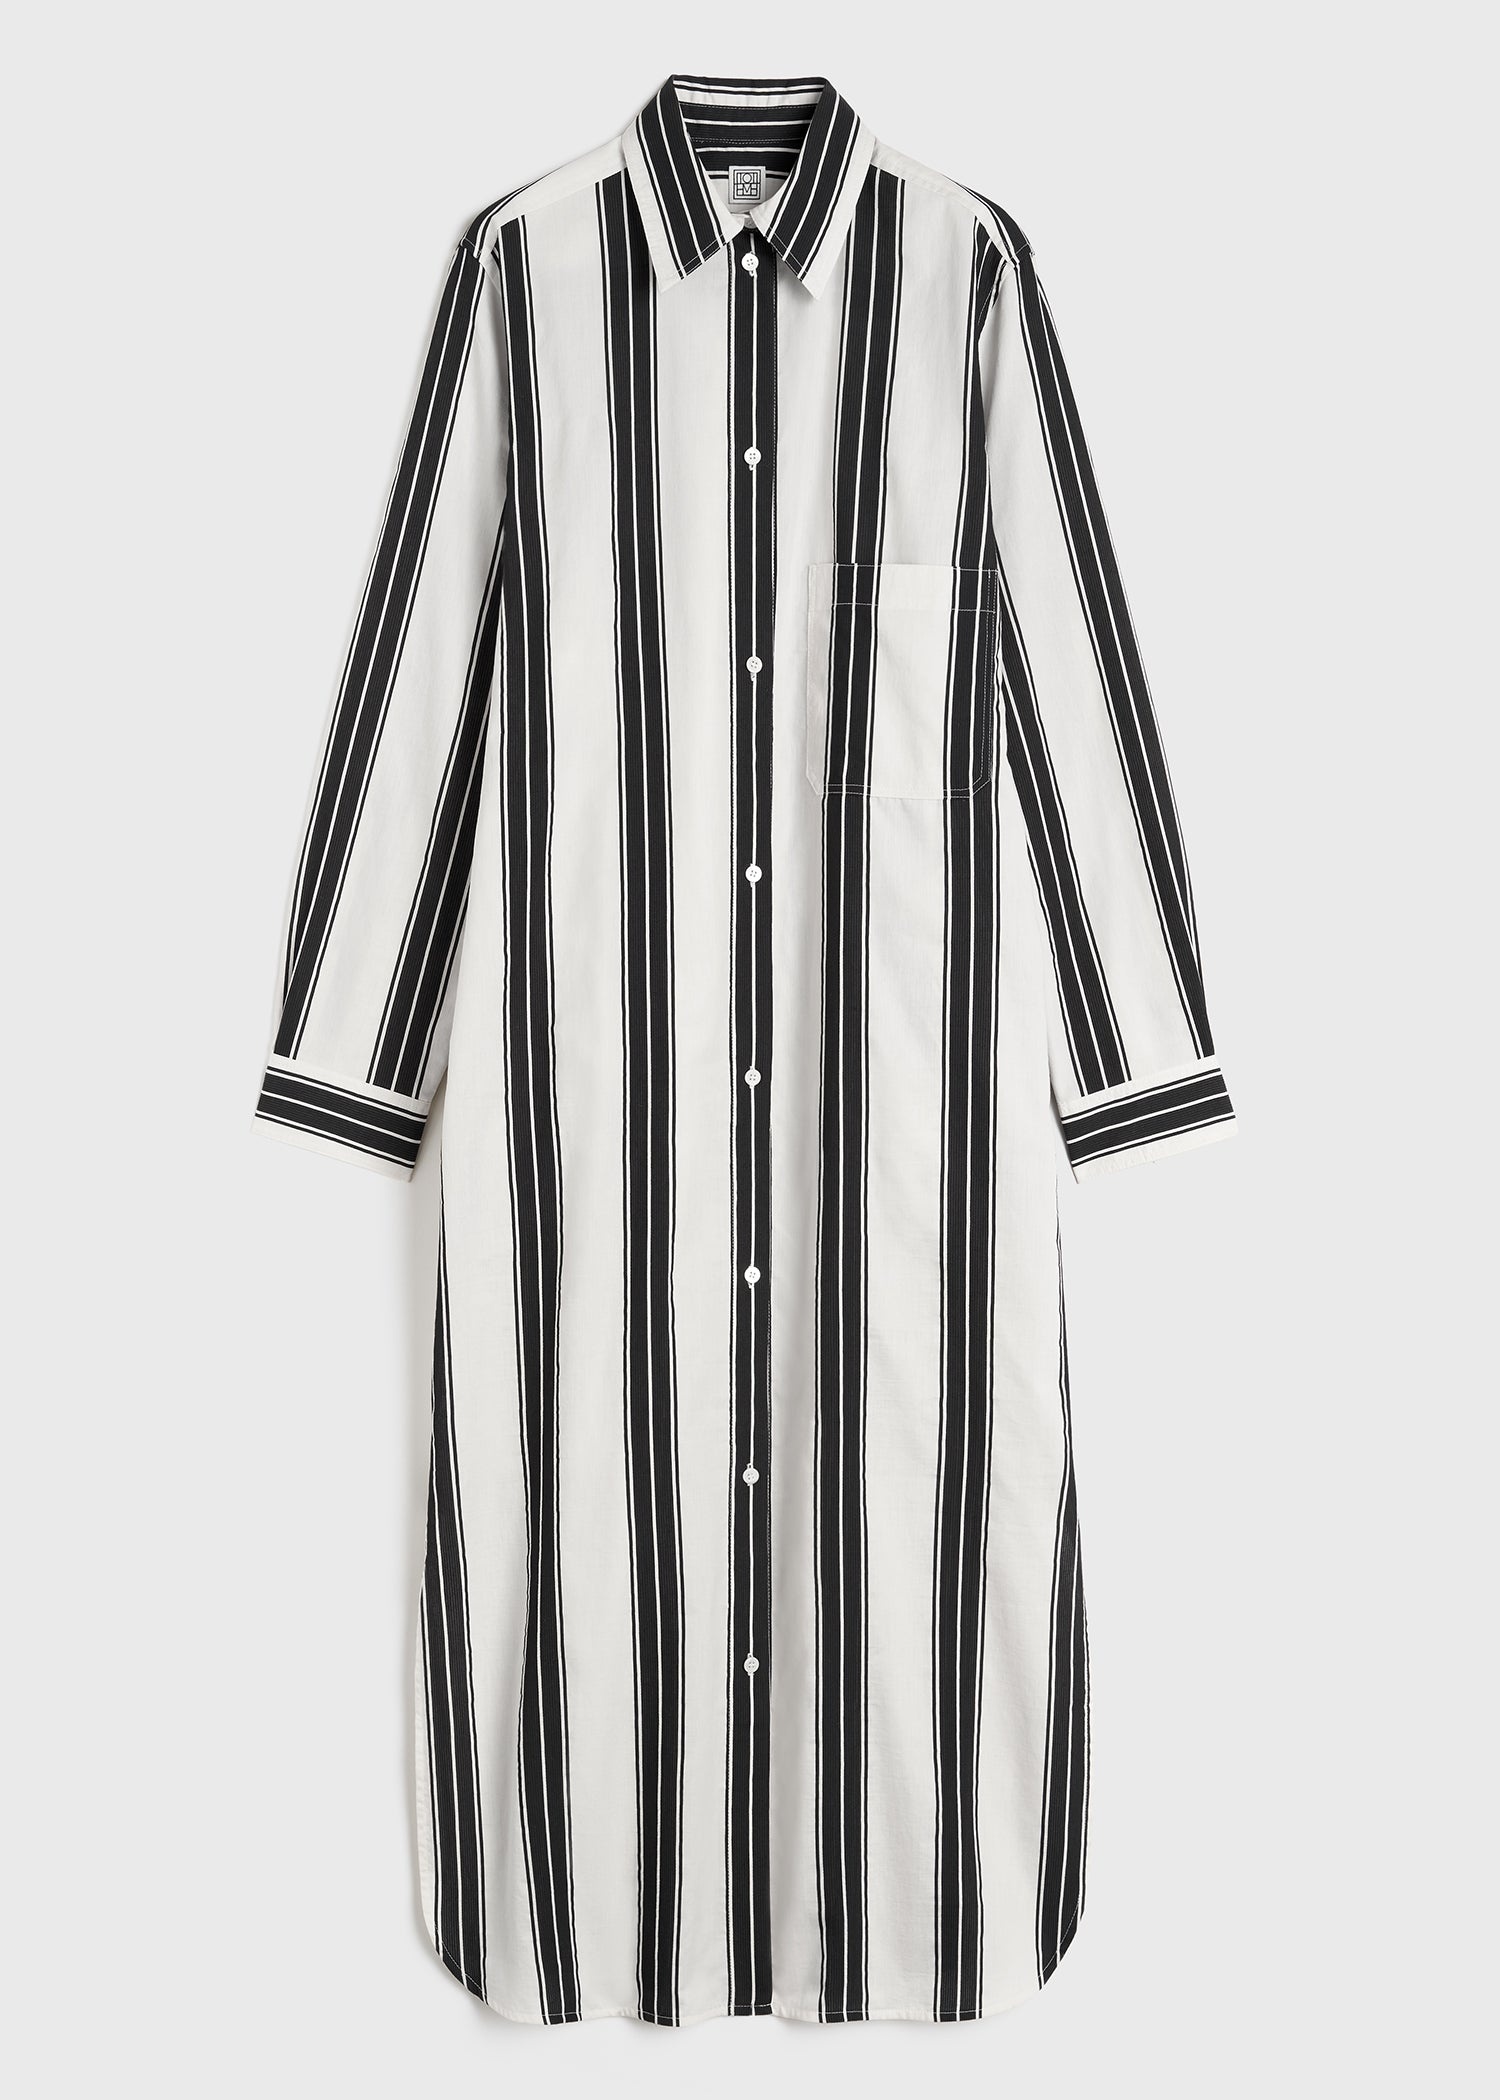 Jacquard-striped tunic dress black/white - 1